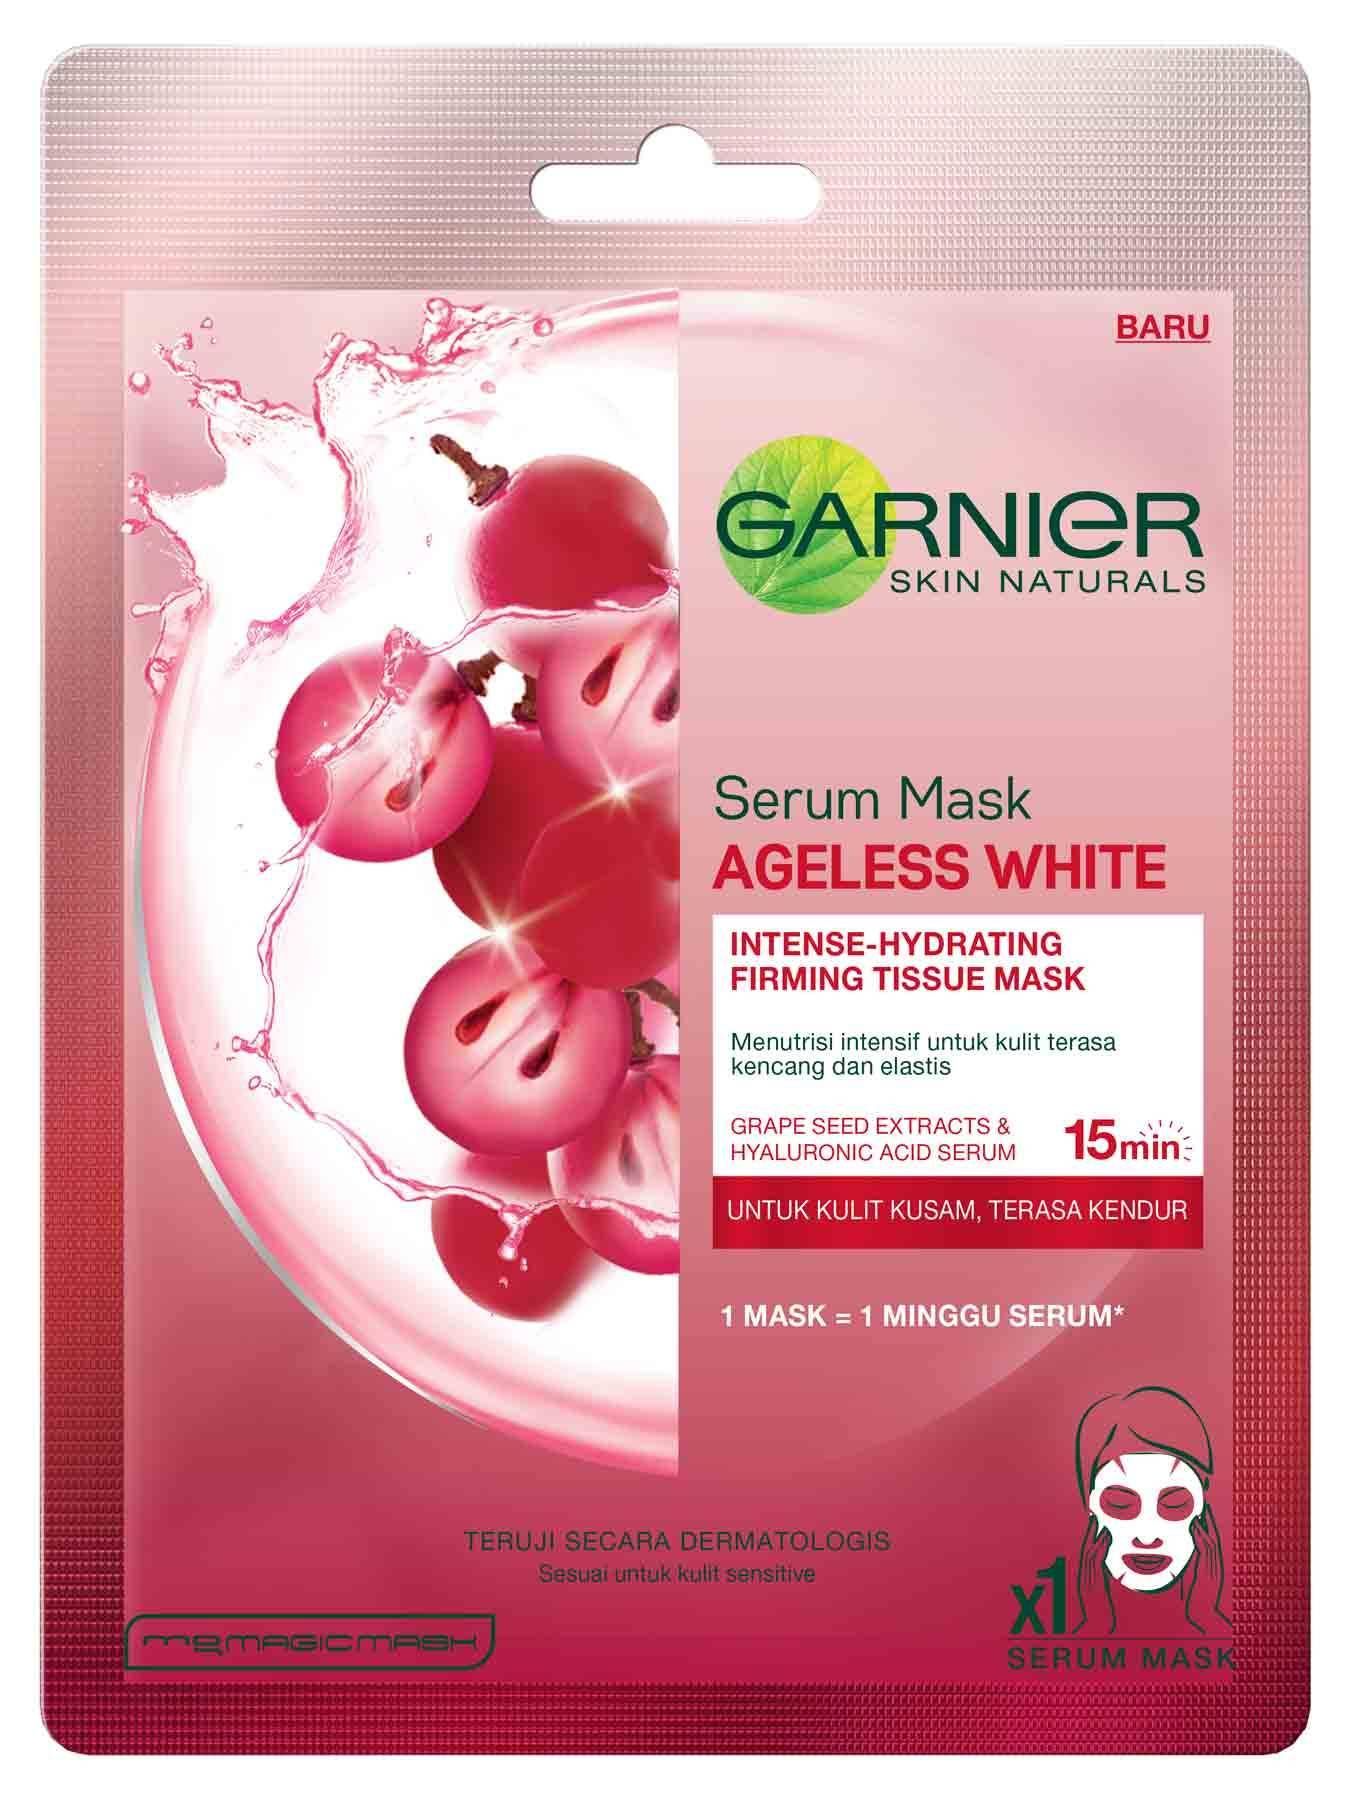 Маска 32 бита. Garnier Skin naturals маска. Garnier Skin Activ маска ткан. Маска гарньер розовая. Garnier маска с виноградной косточкой.